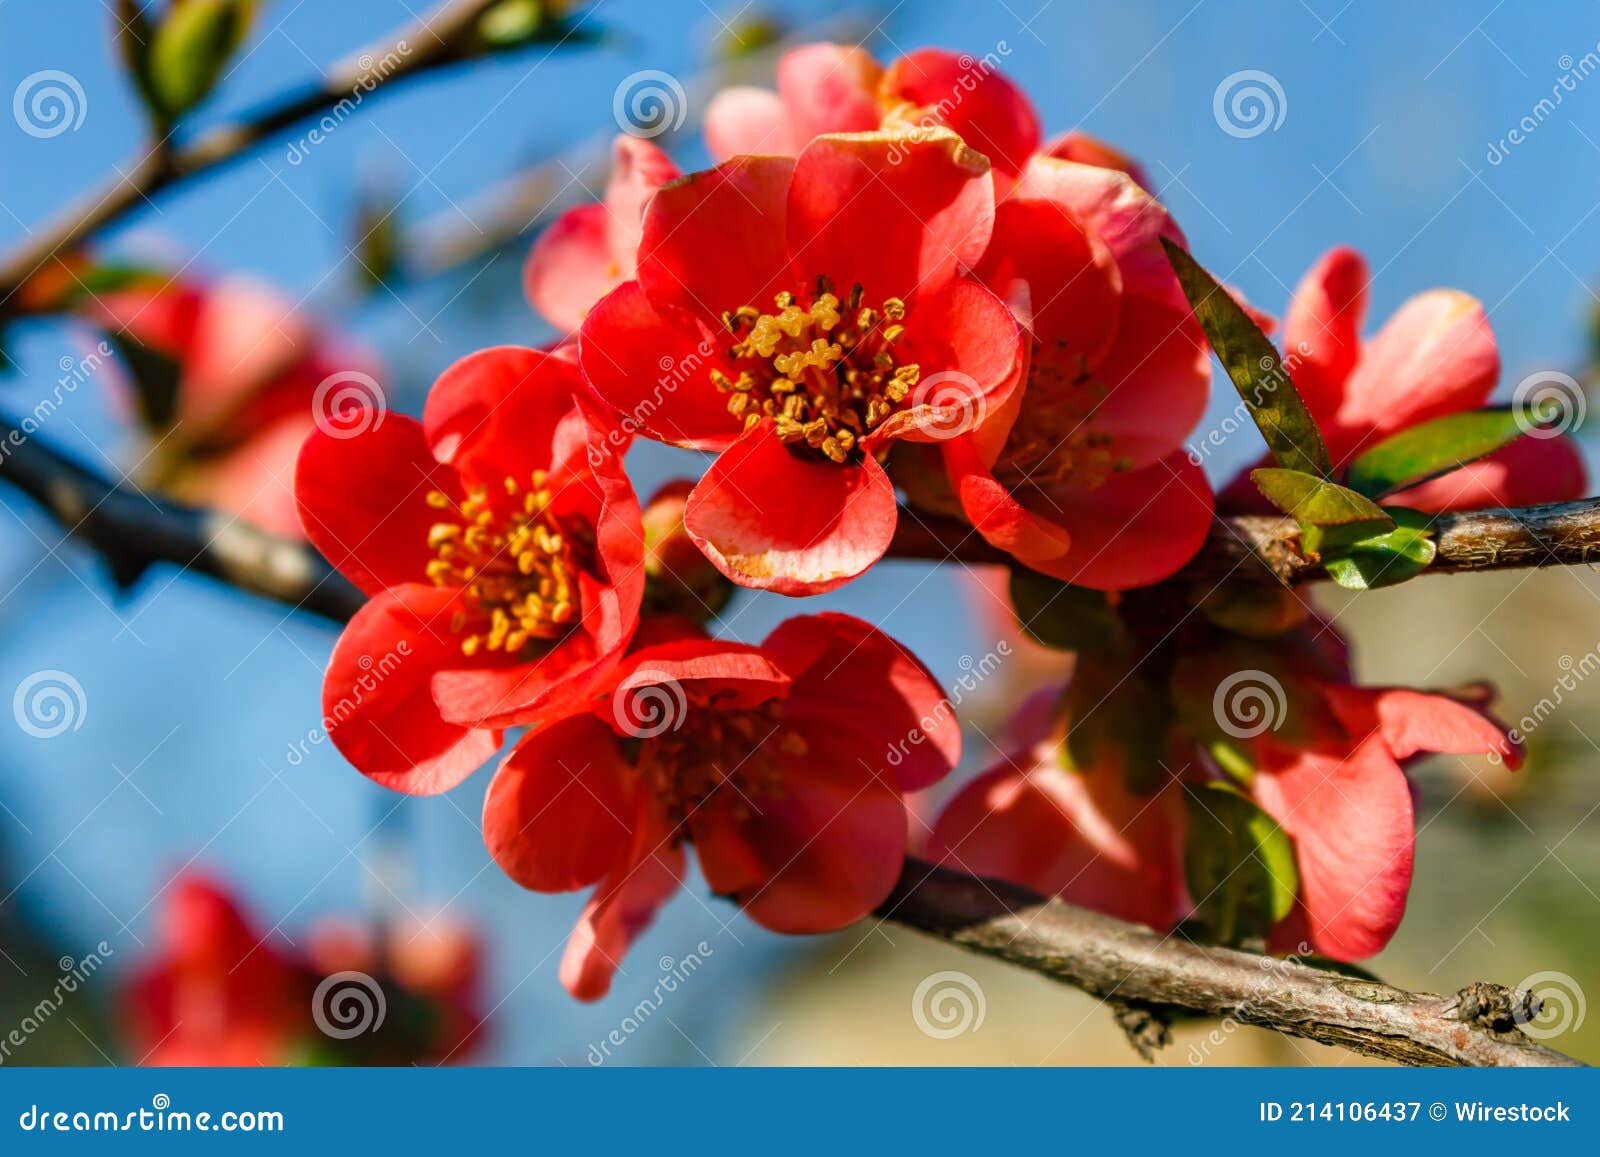 Primer Plano De Flores De Cerezo Rojo En Ramas De árbol Contra Un Fondo  Borroso Imagen de archivo - Imagen de azul, cielos: 214106437